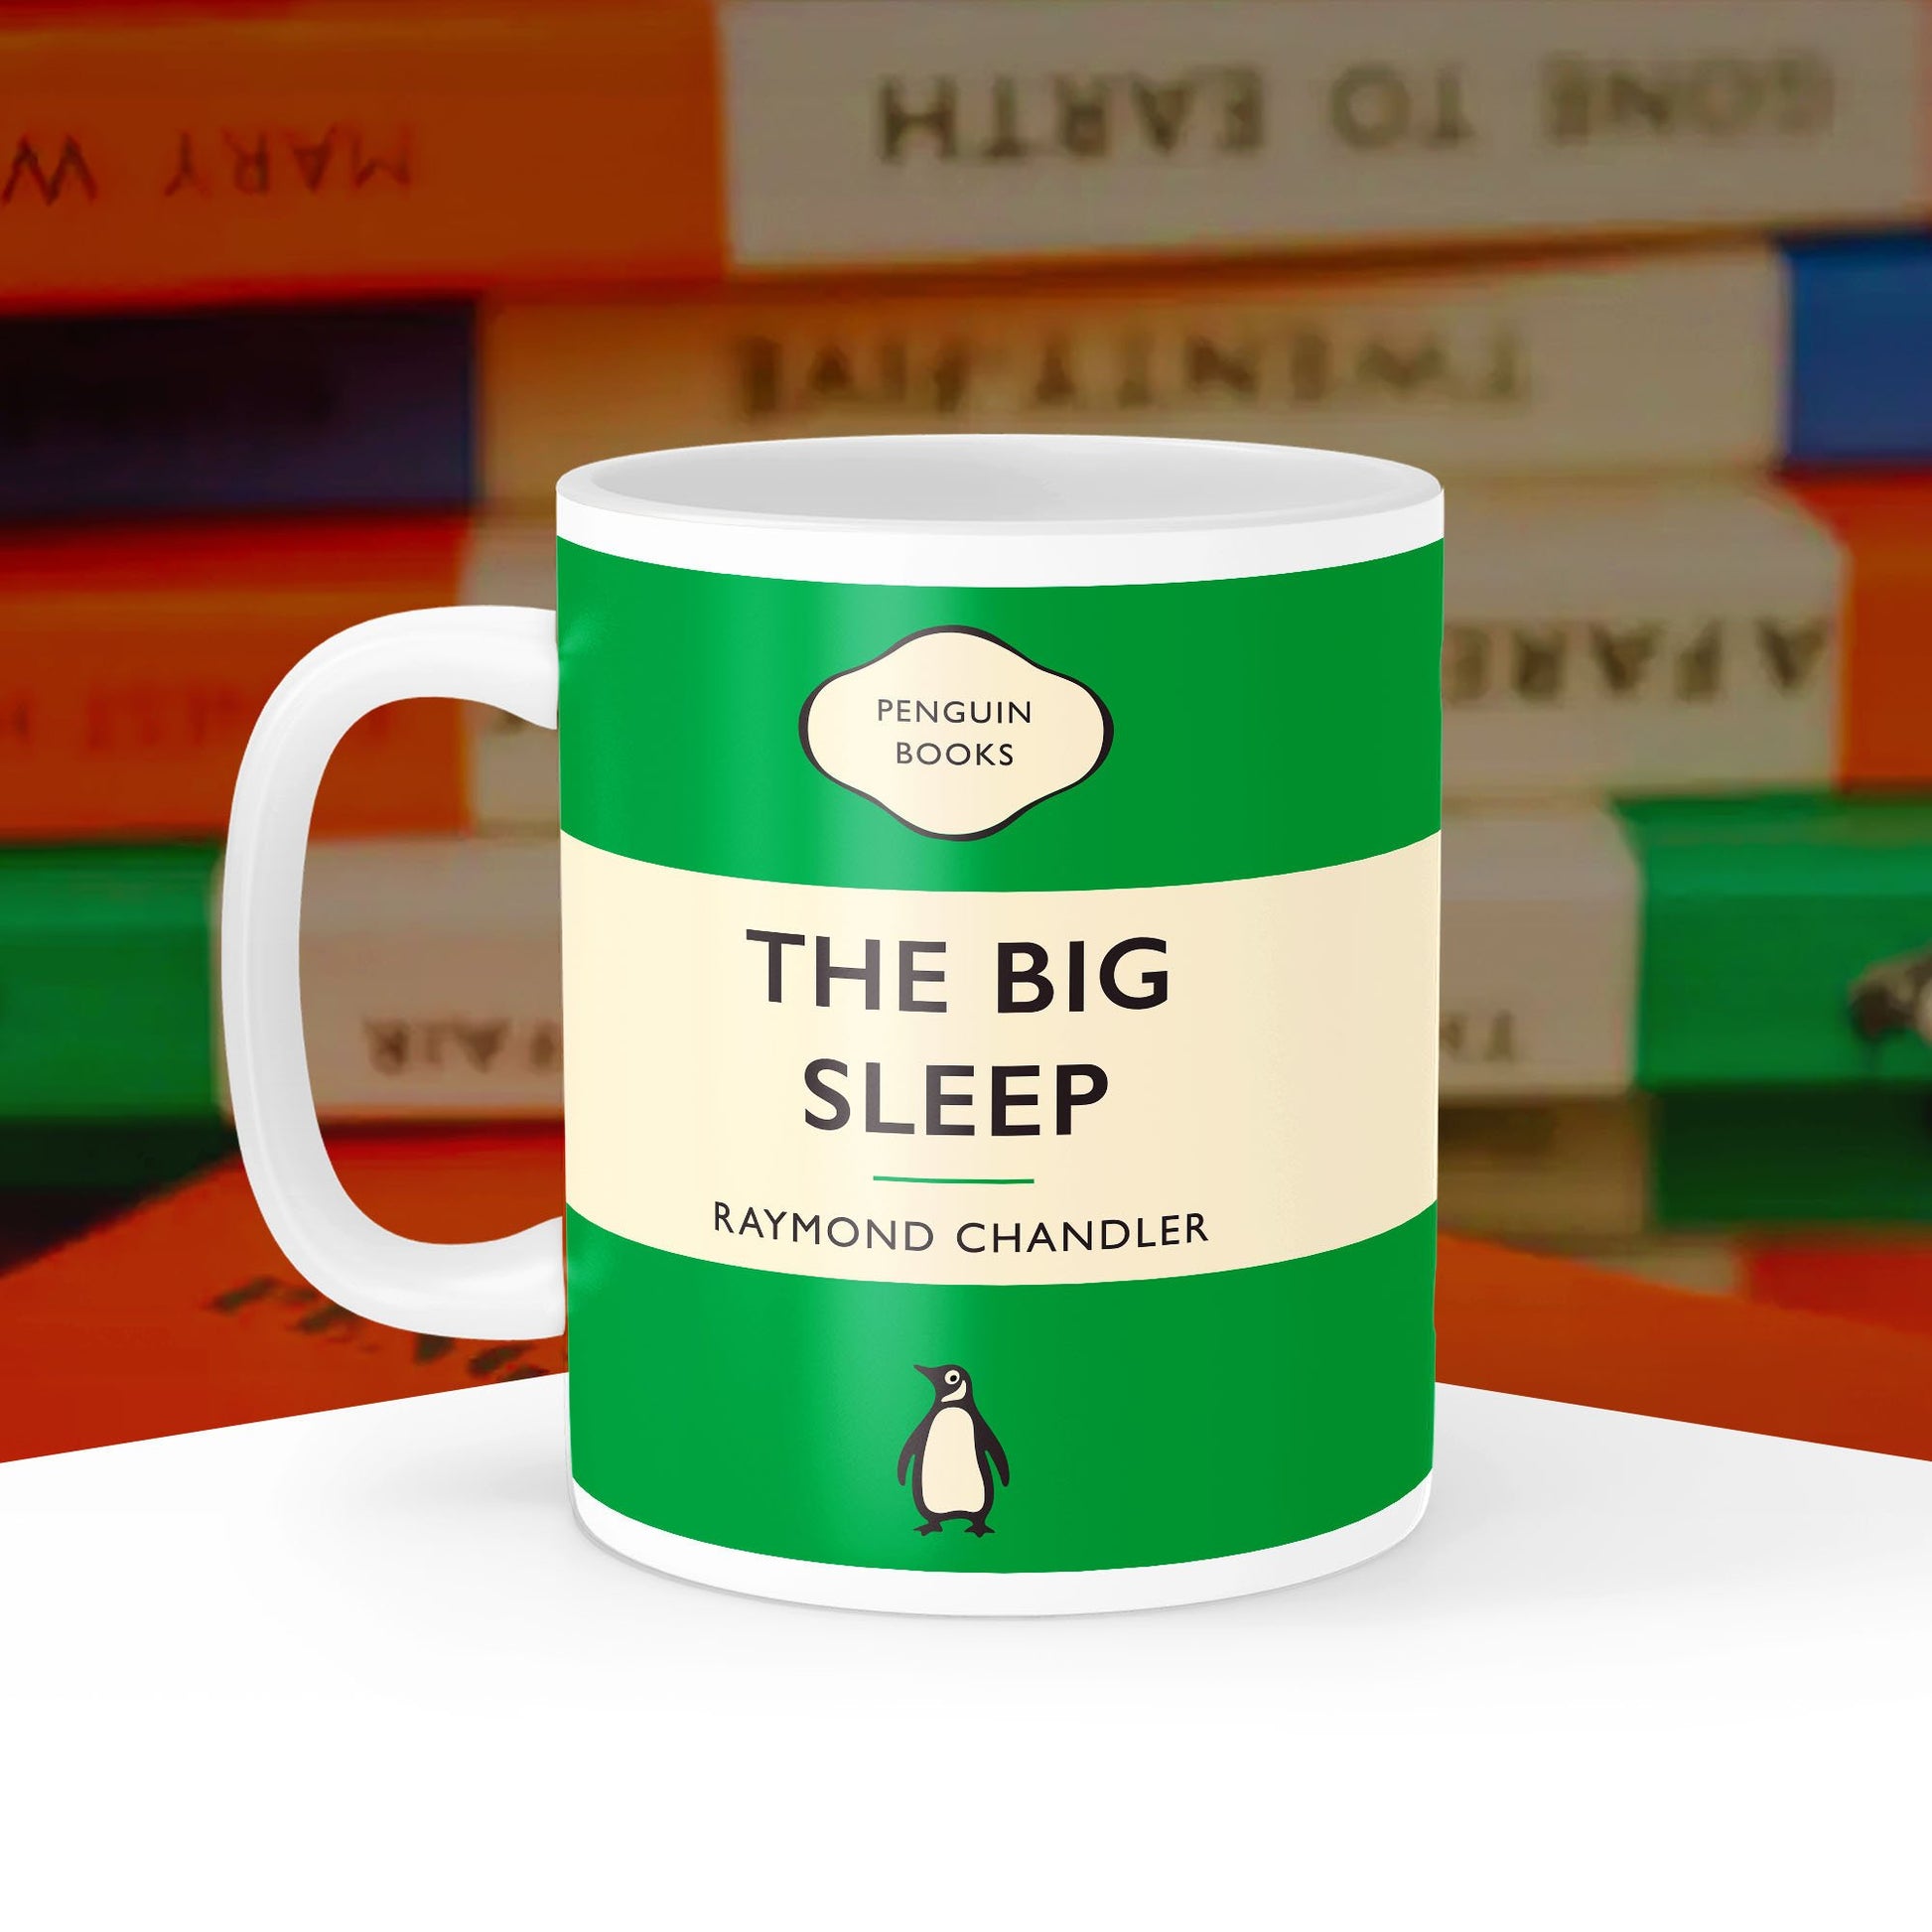 The Big Sleep - Raymond Chandler Penguin Book Cover Mug